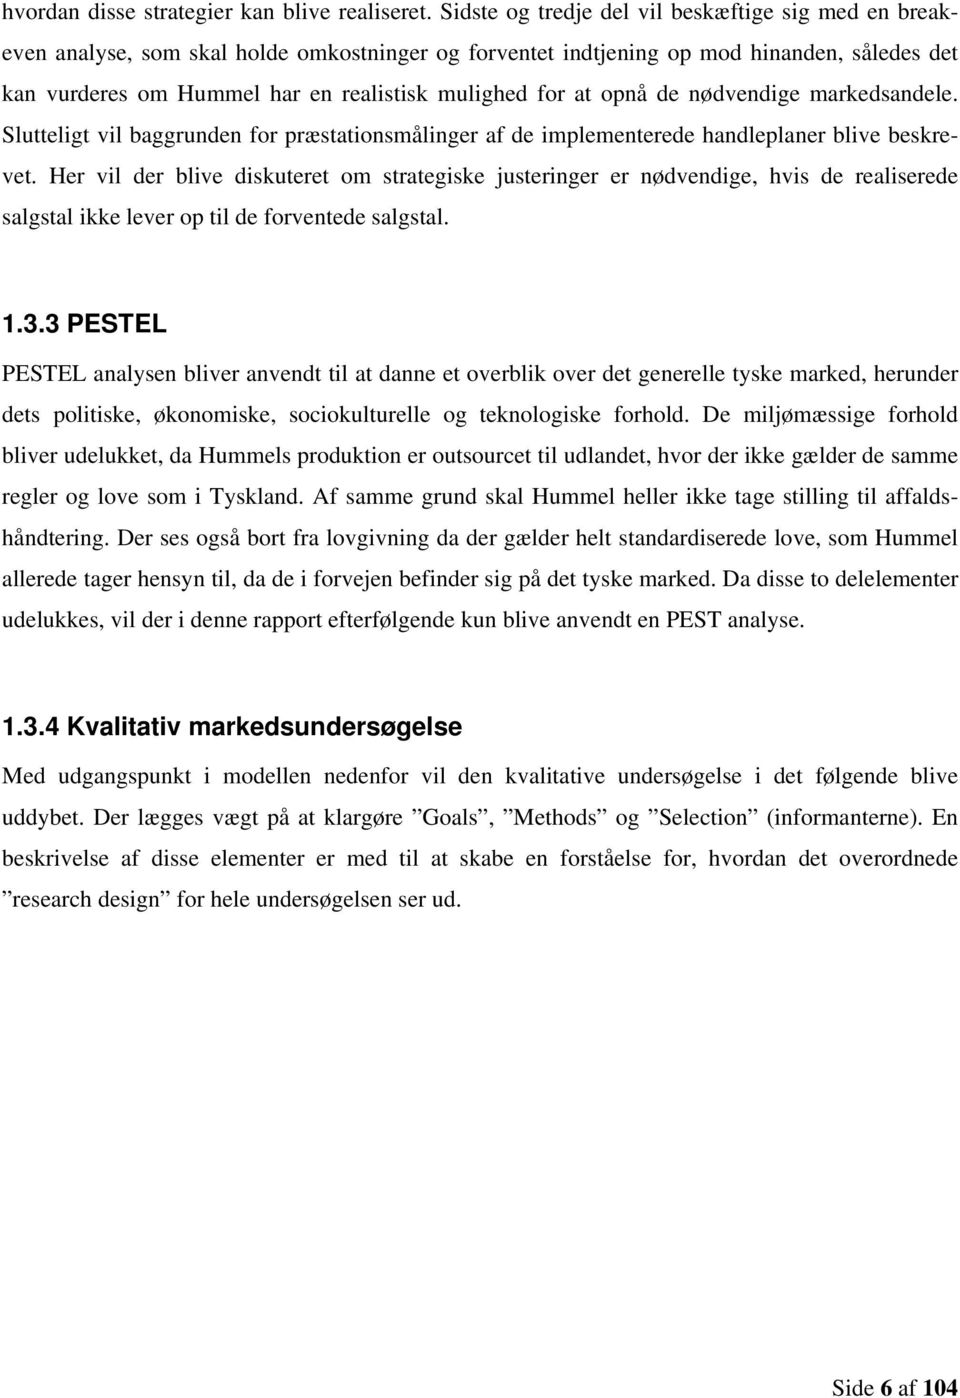 Hummels potentielle på det tyske marked for og -sko - PDF Gratis download